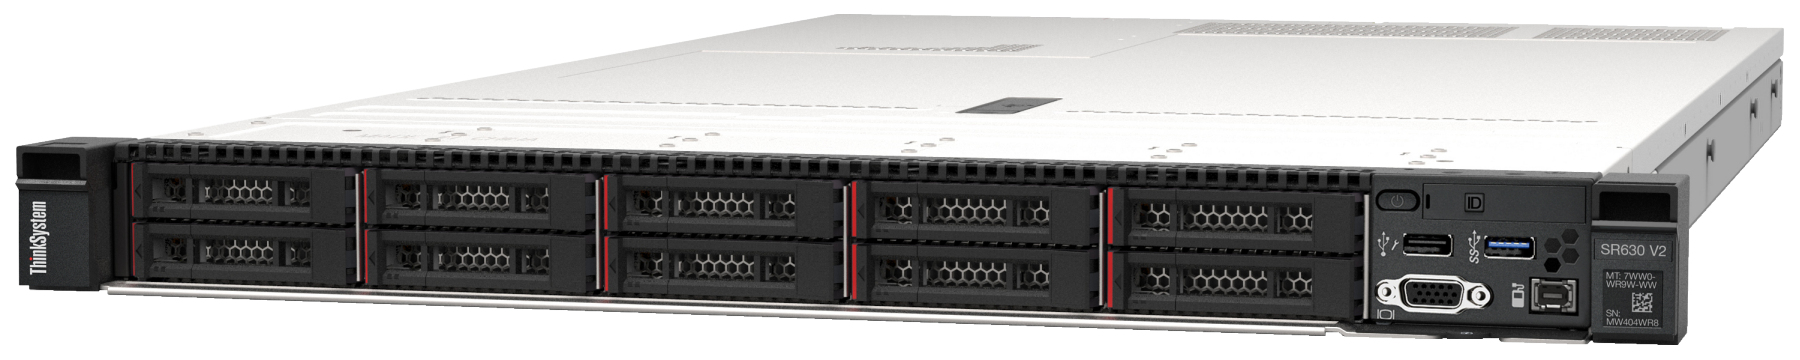 Сервер Lenovo ThinkSystem SR630 V2 (7Z71A055EA). Фиксированная комплектация сервера